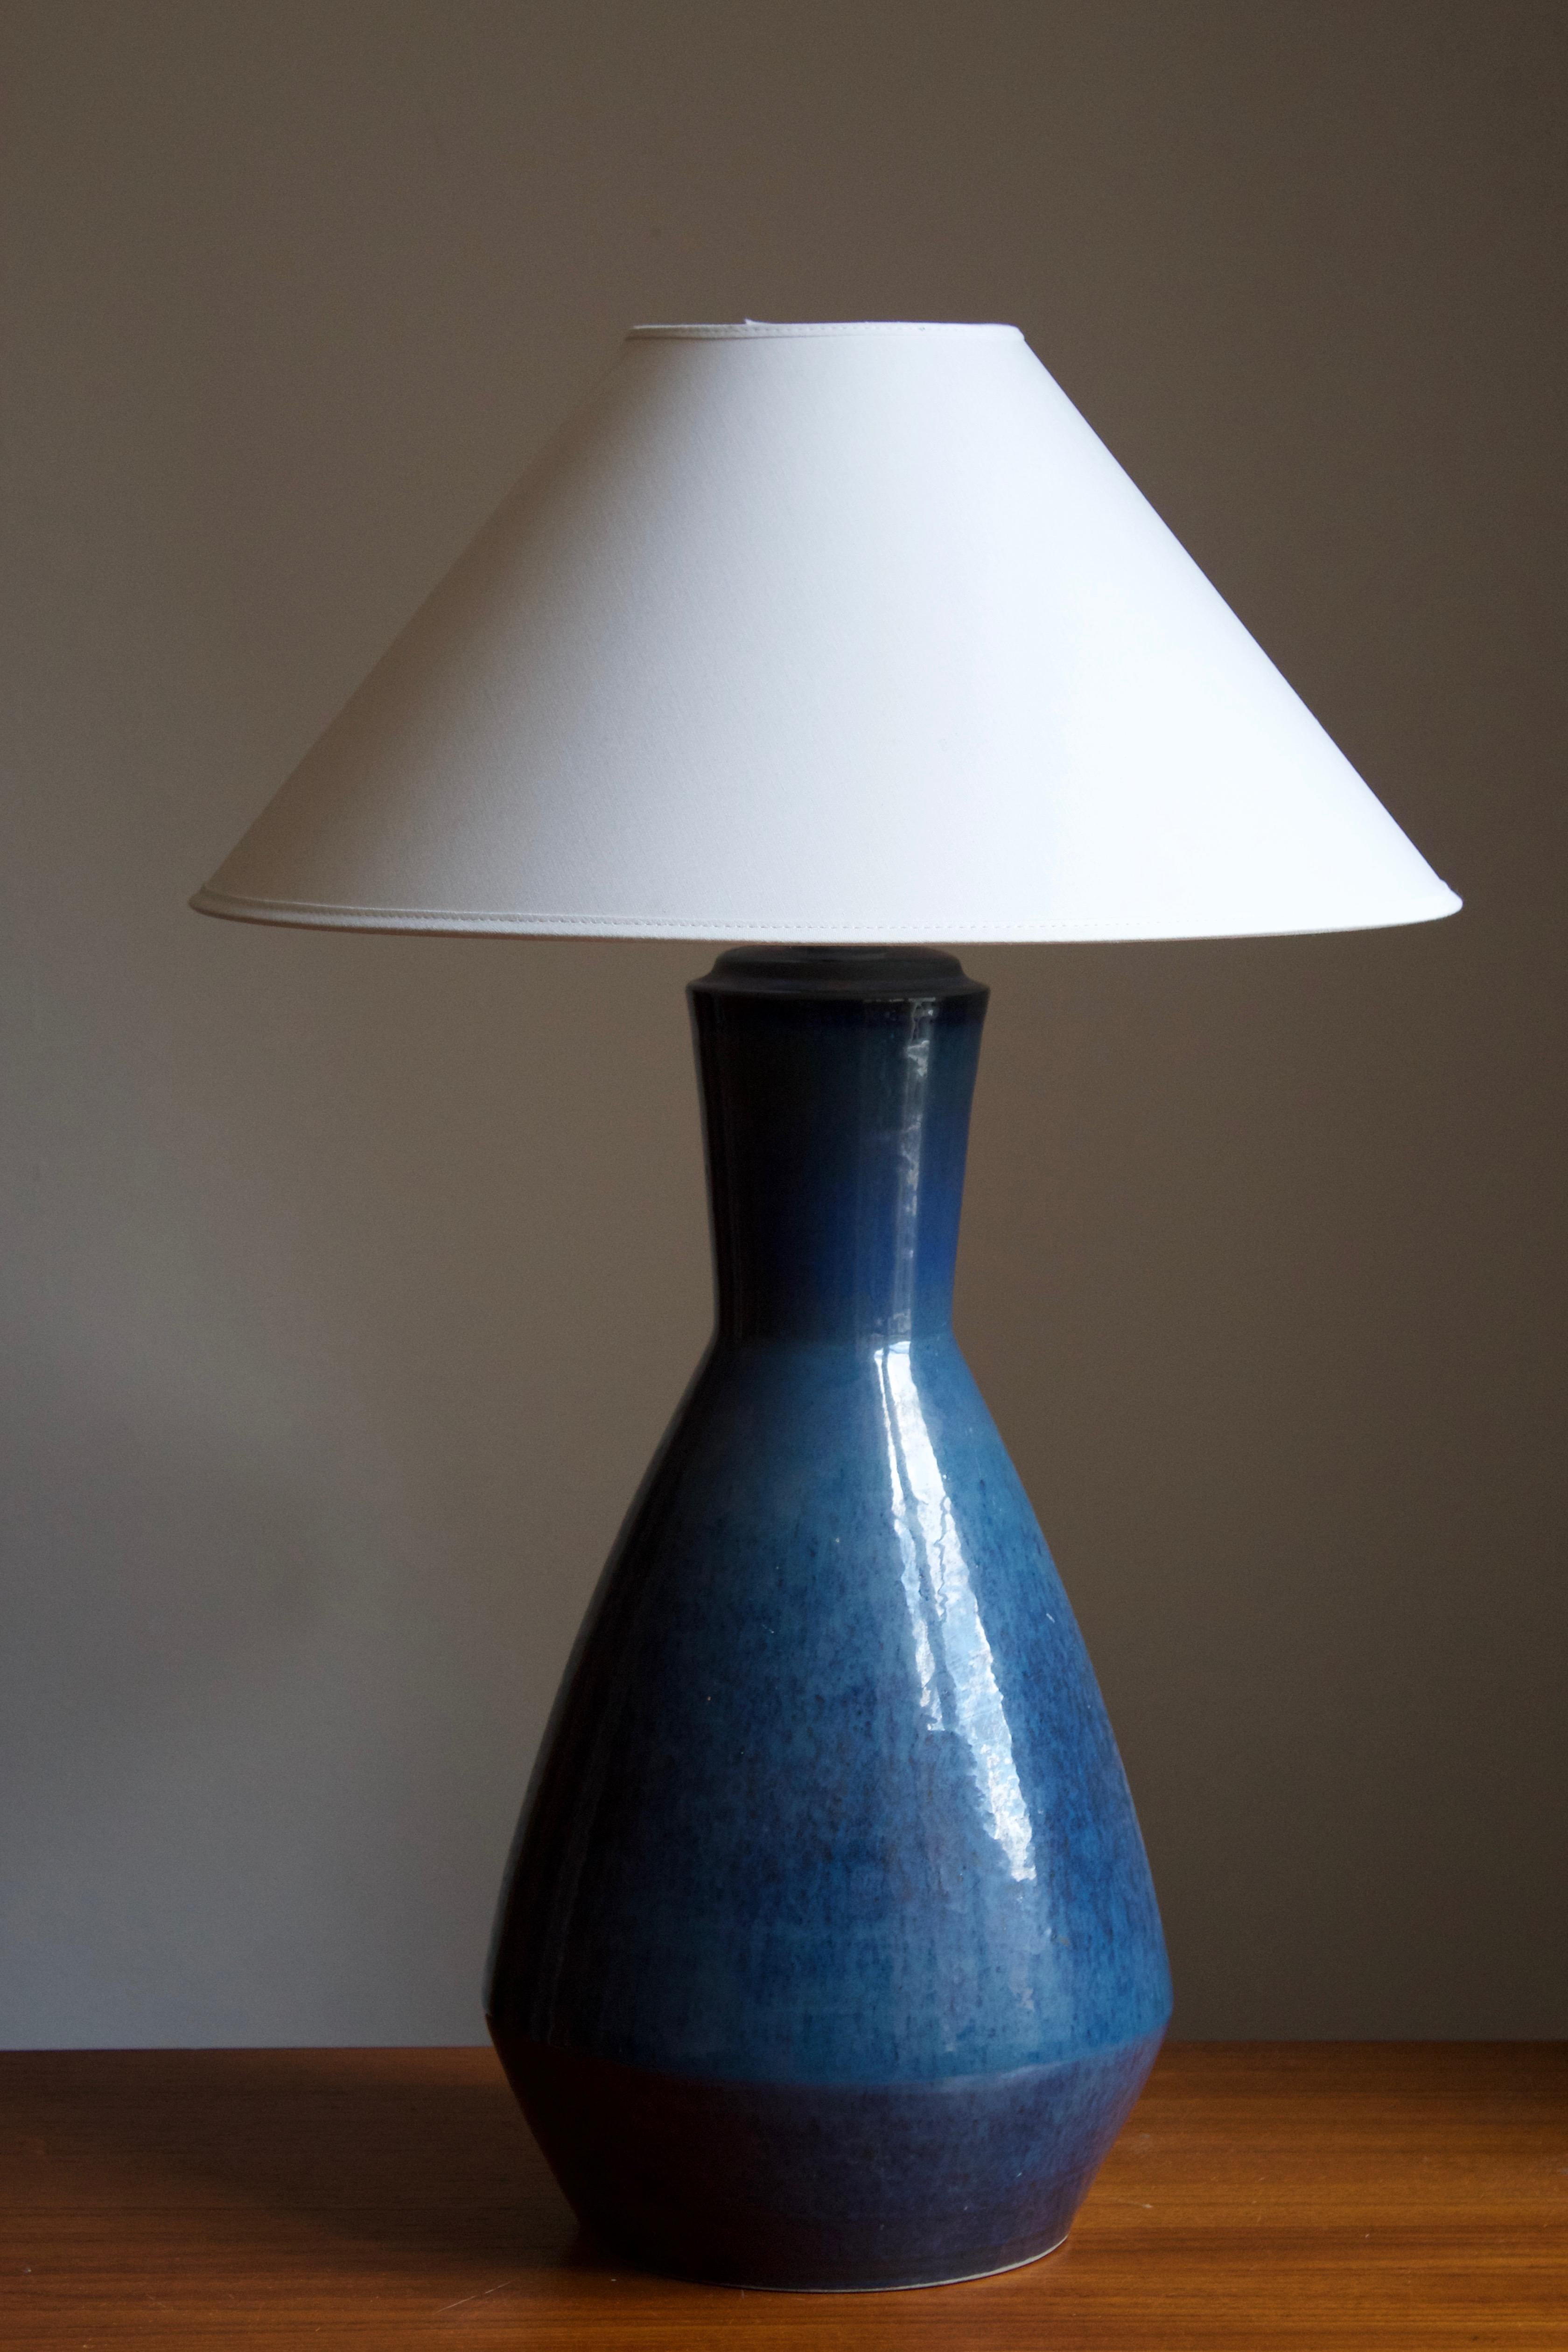 Une grande lampe de table produite par Søholm Keramik, situé sur l'île de Bornholm au Danemark. Doté d'une glaçure très artistique. 

Vendu sans abat-jour. Les dimensions indiquées ne comprennent pas l'abat-jour. La hauteur inclut la douille.

Le